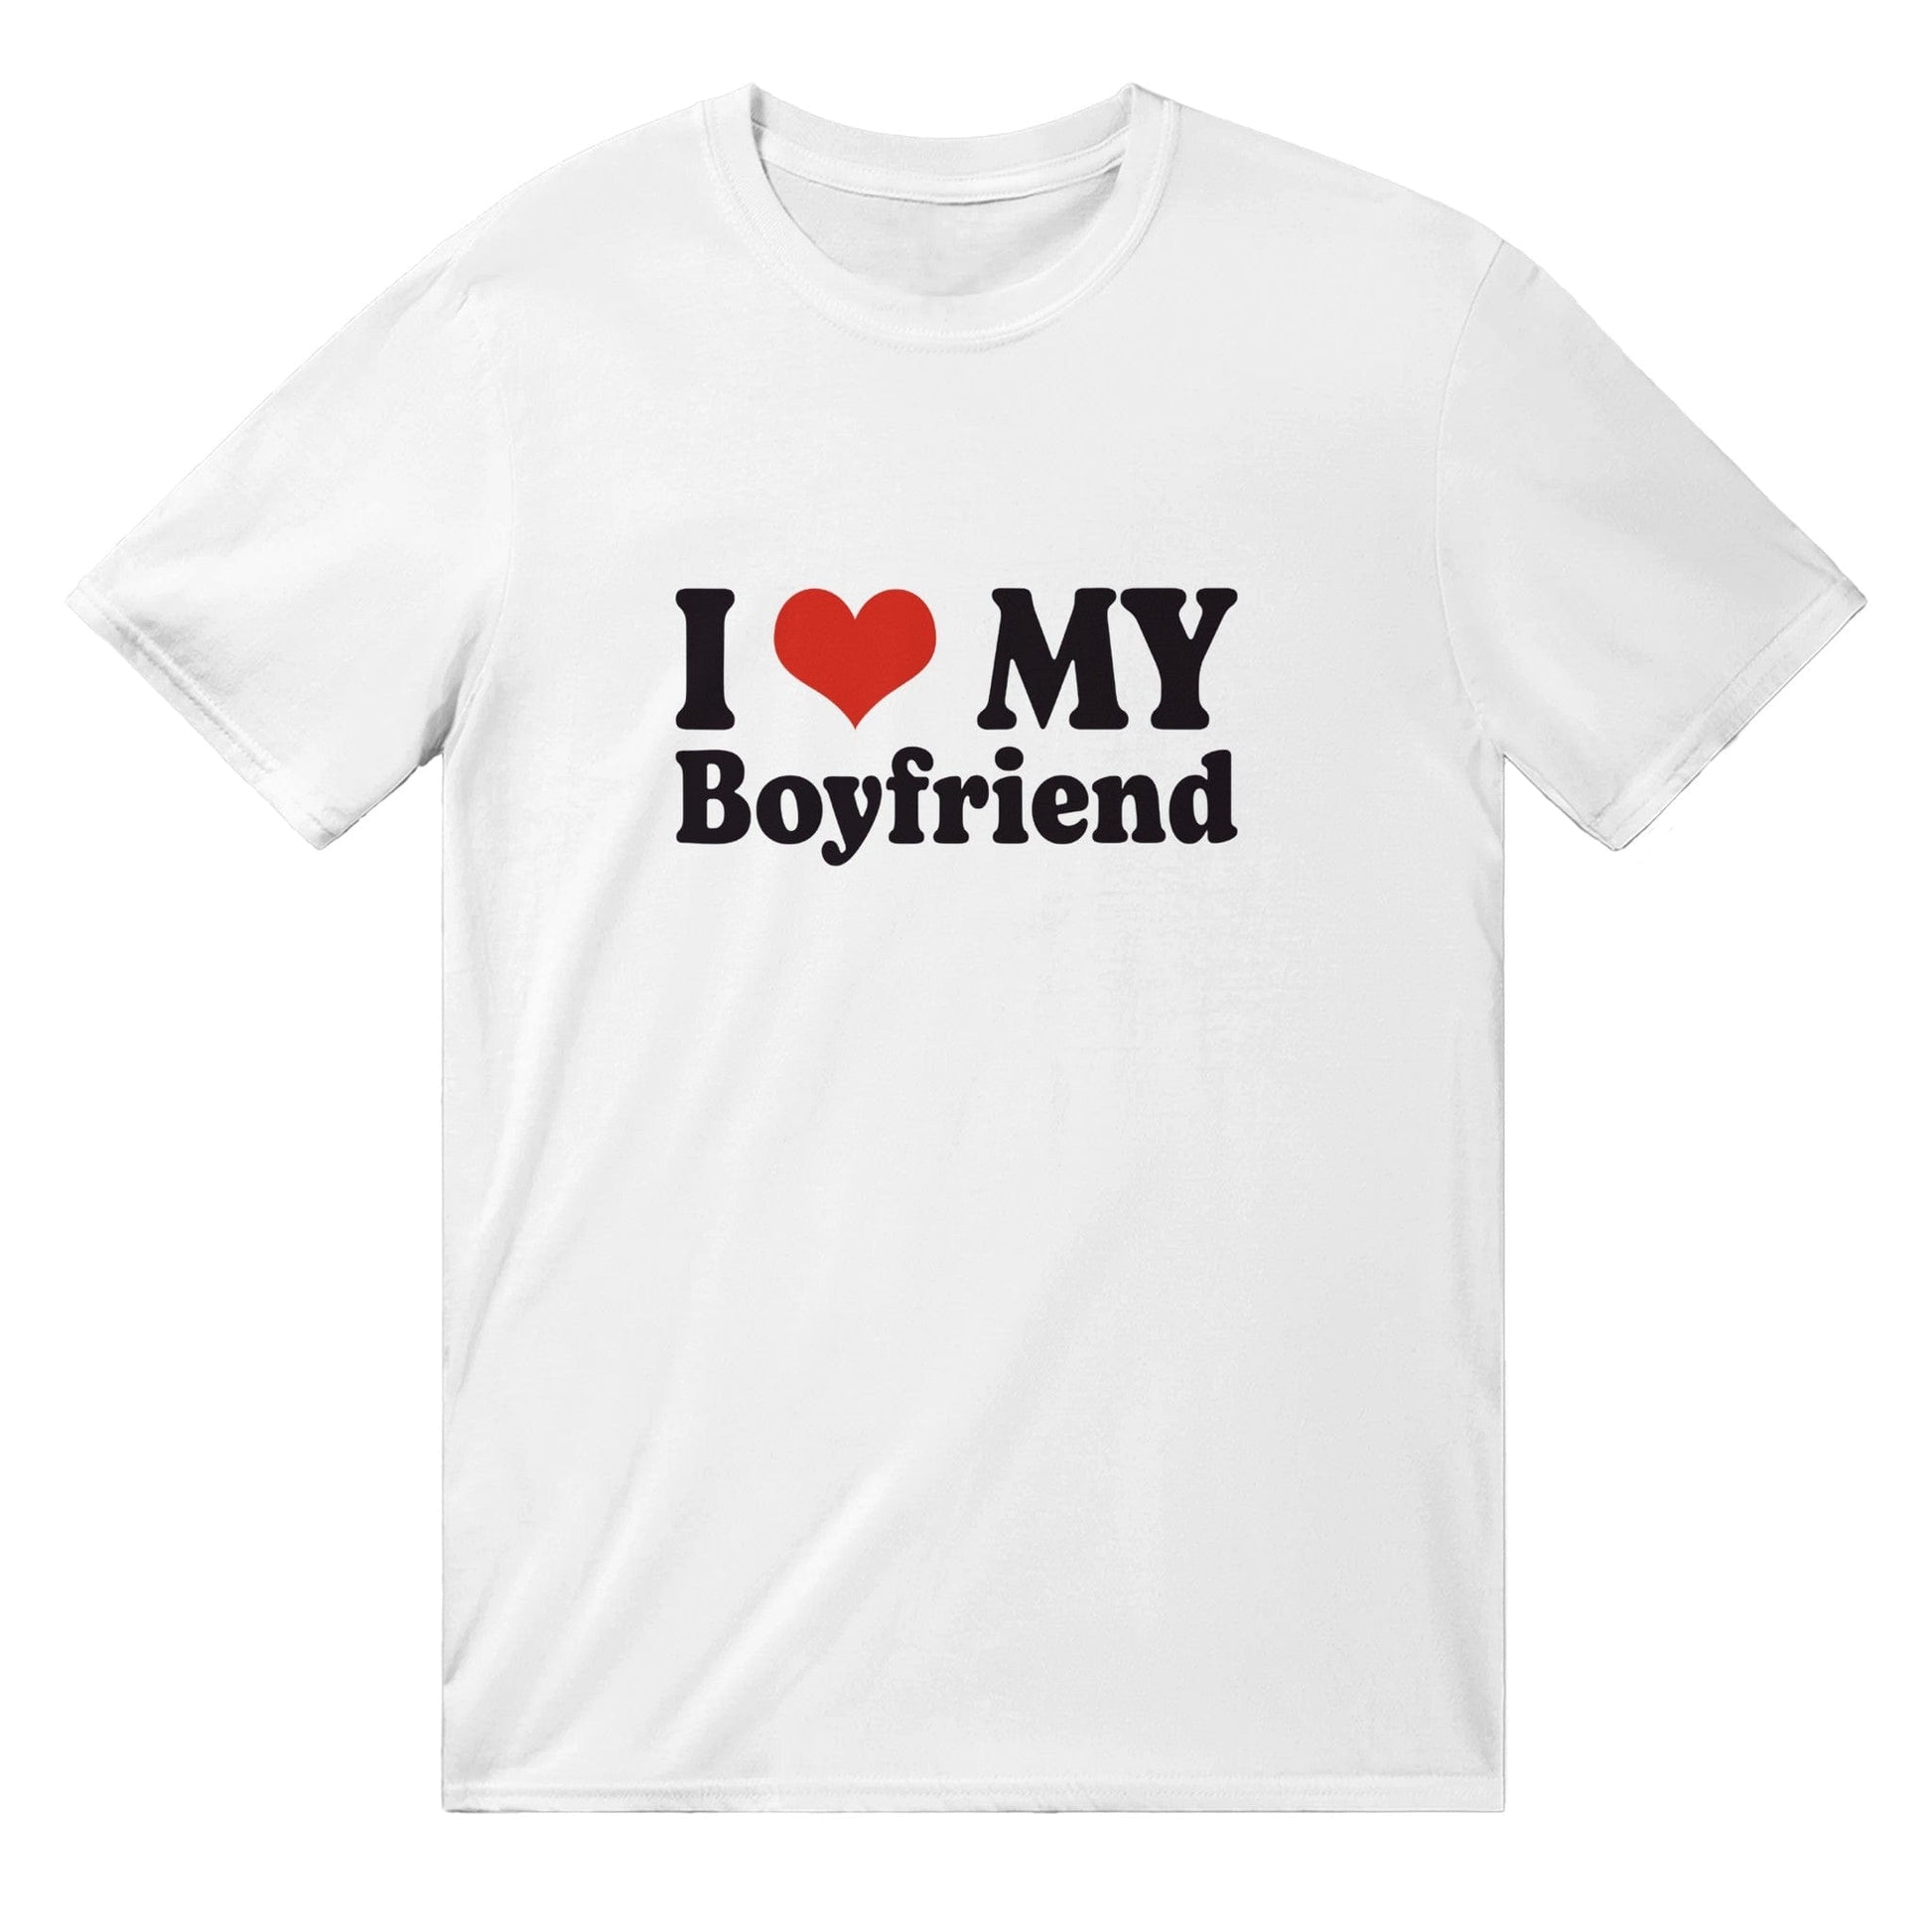 I Love My Boyfriend T-Shirt Graphic Tee Australia Online White / S